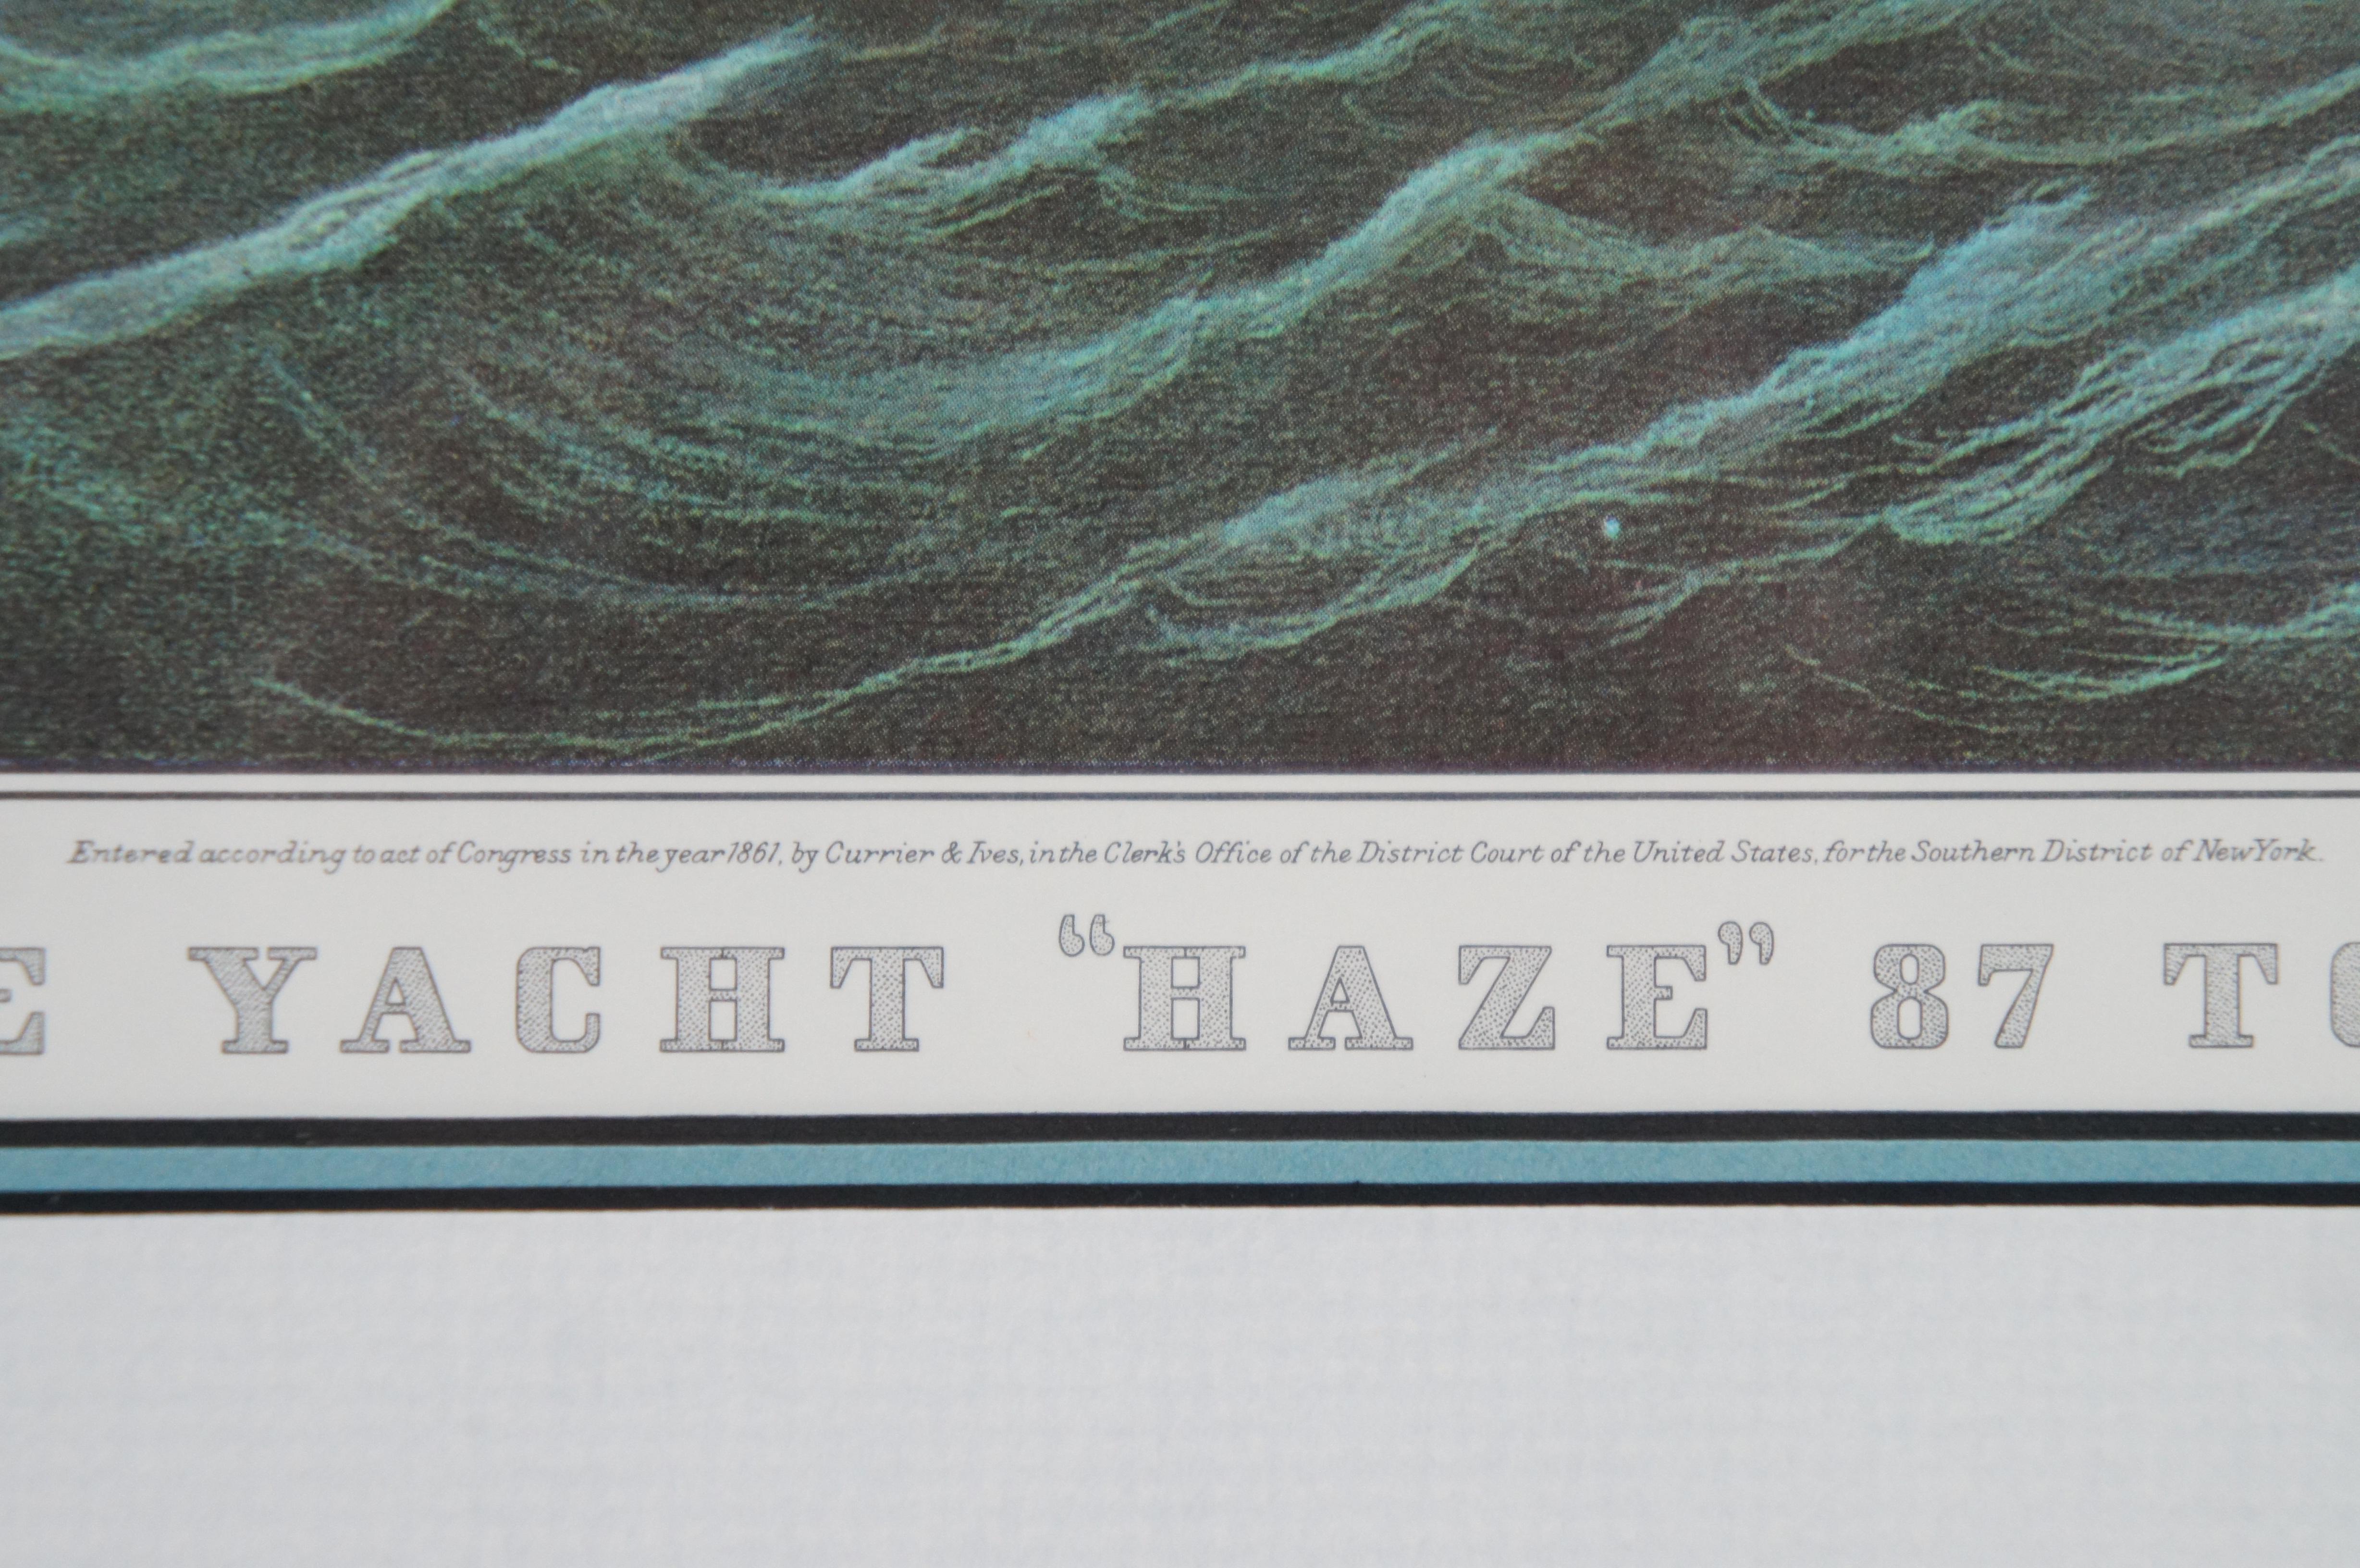 Currier & Ives C. Parsons The Yacht Haze 87 Tons Impression maritime nautique 21